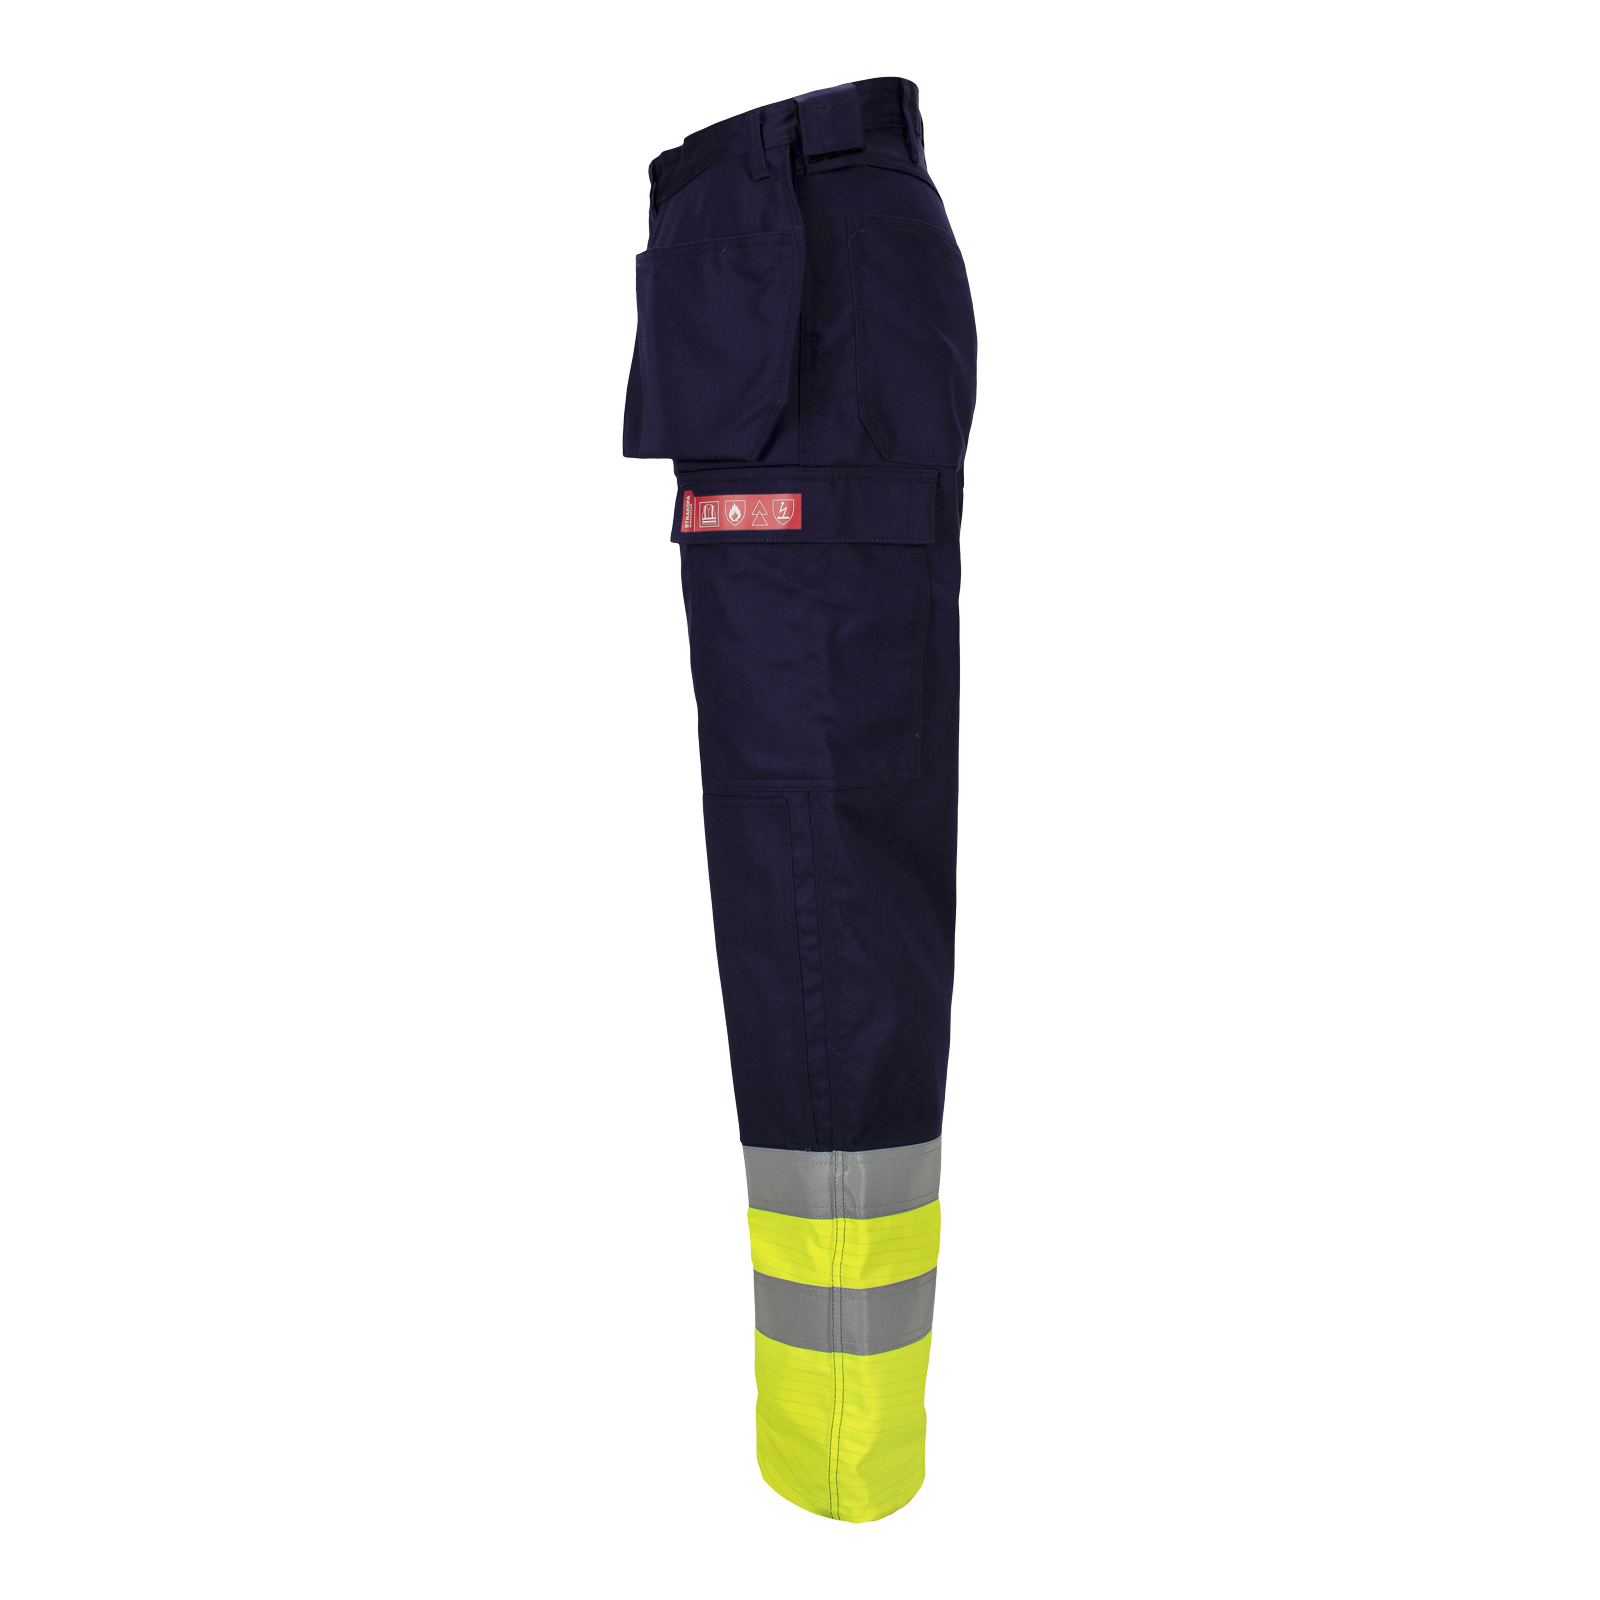 Aksla flammehemmende bukse med verktøylommer, klasse 1